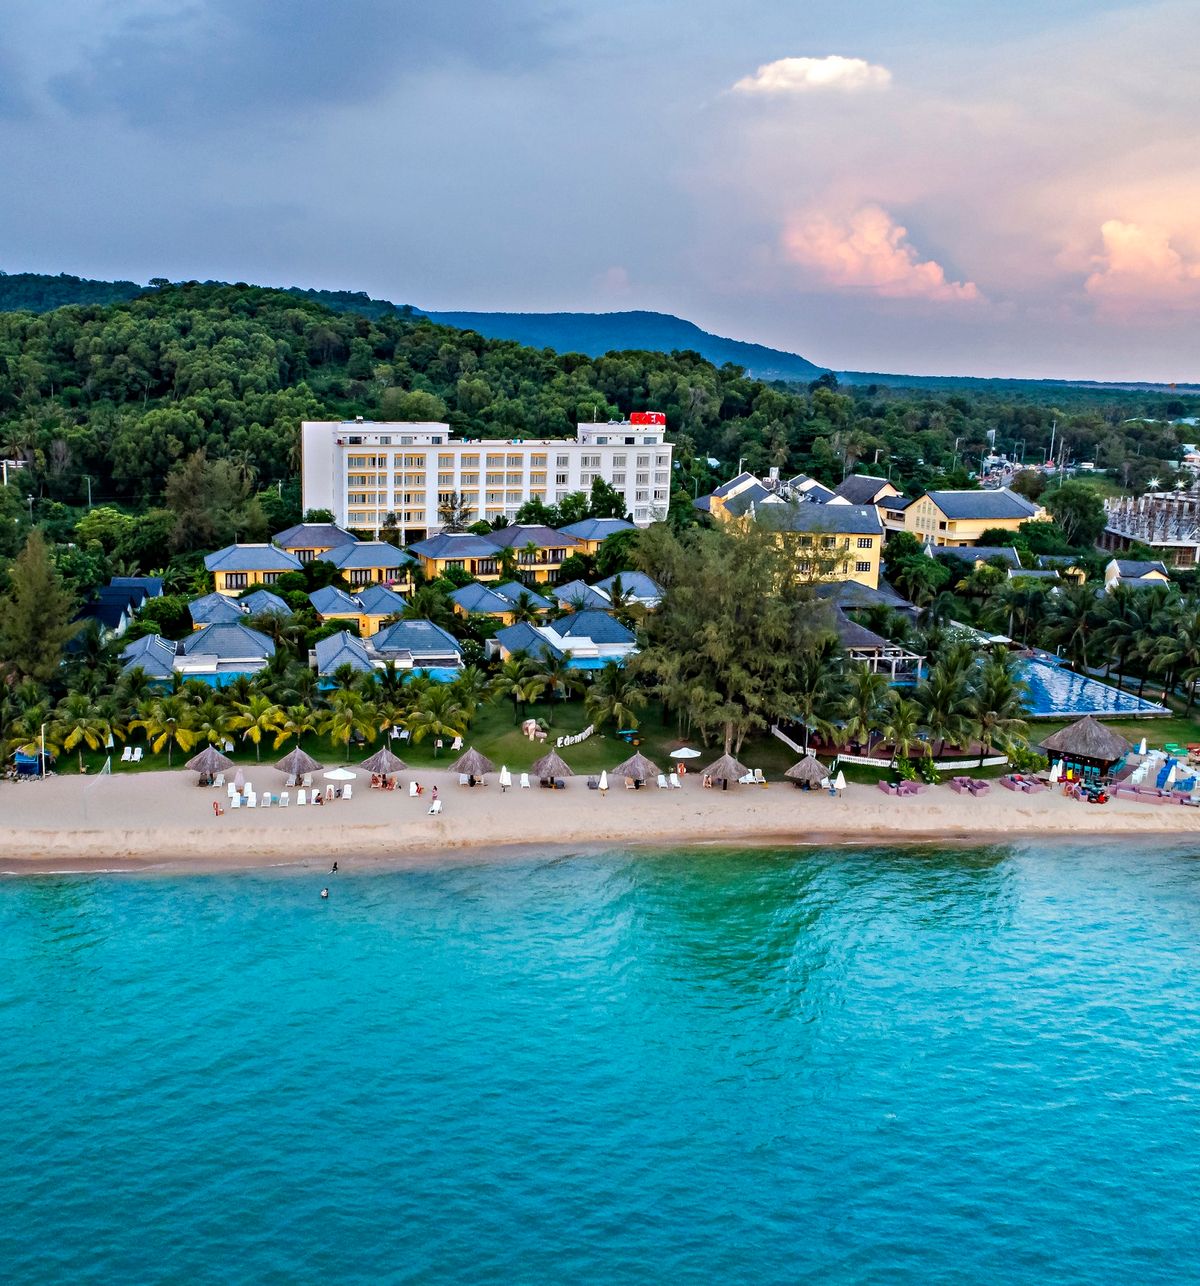 Eden Resort Phú Quốc - Resort Phú Quốc 4 sao xinh đẹp nằm bên bờ Tây đảo Ngọc 2